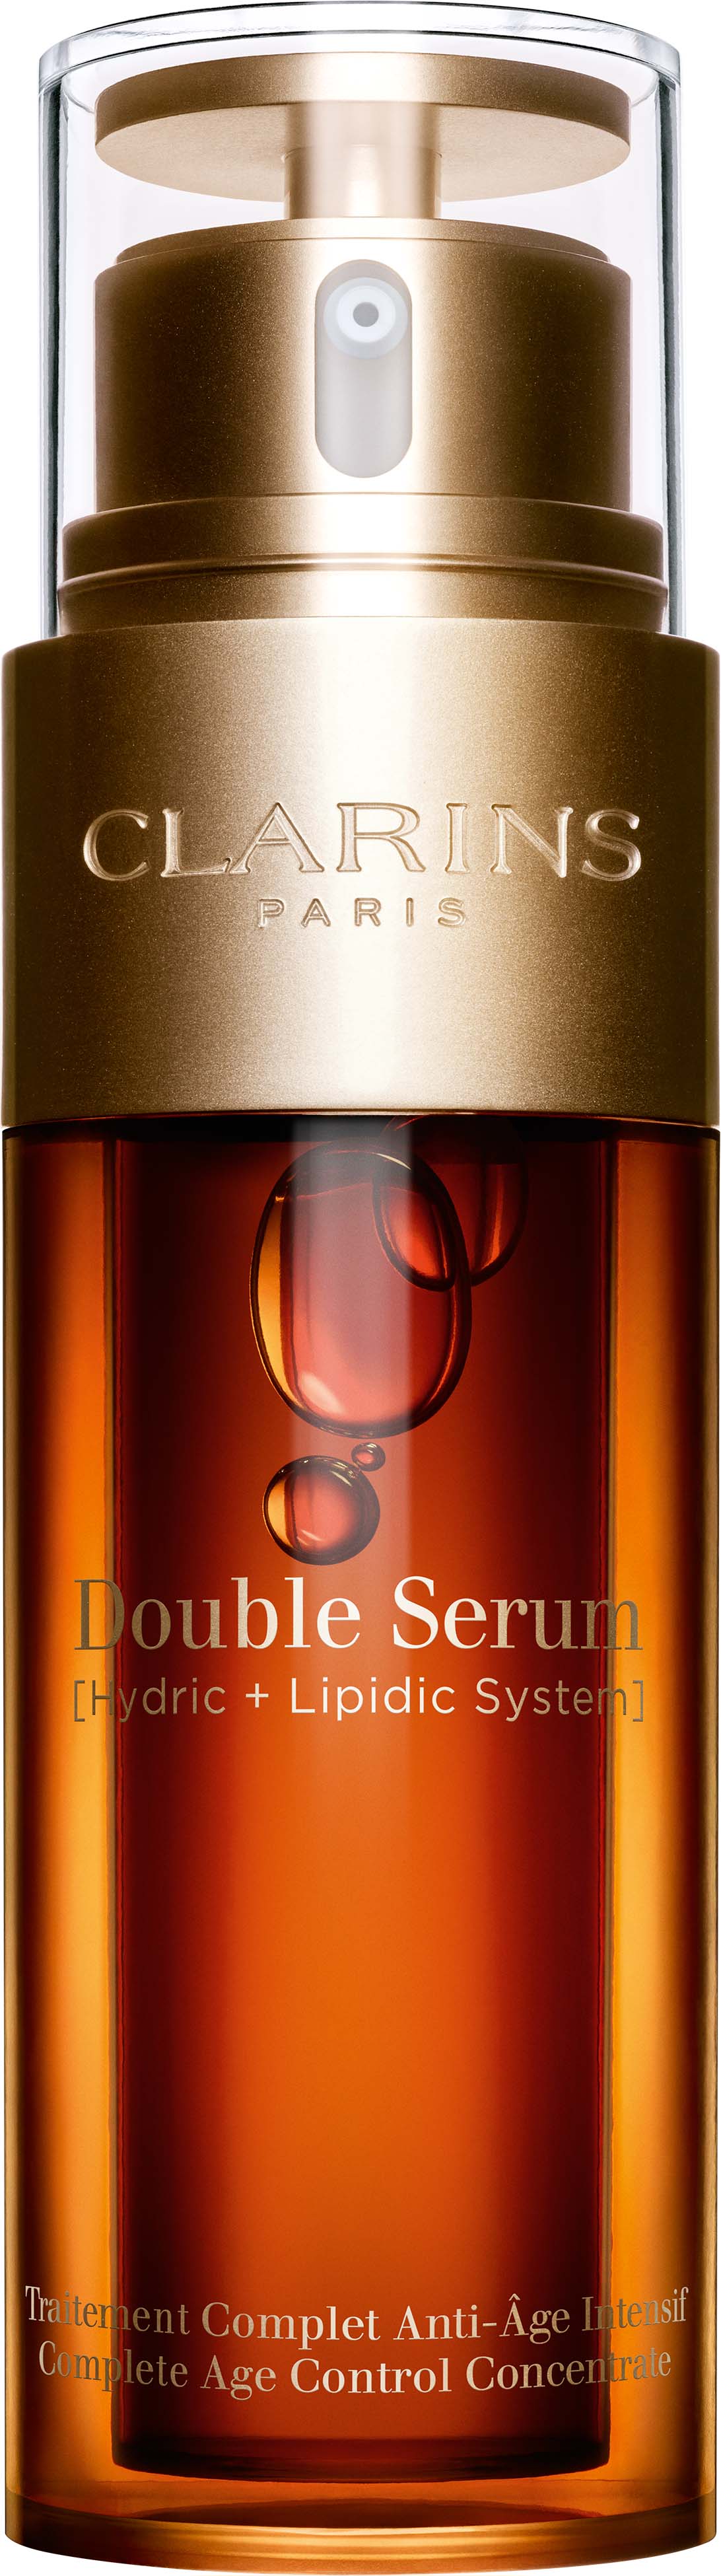 Clarins Double Serum kozmetika szett V. | penzugydrukker.hu